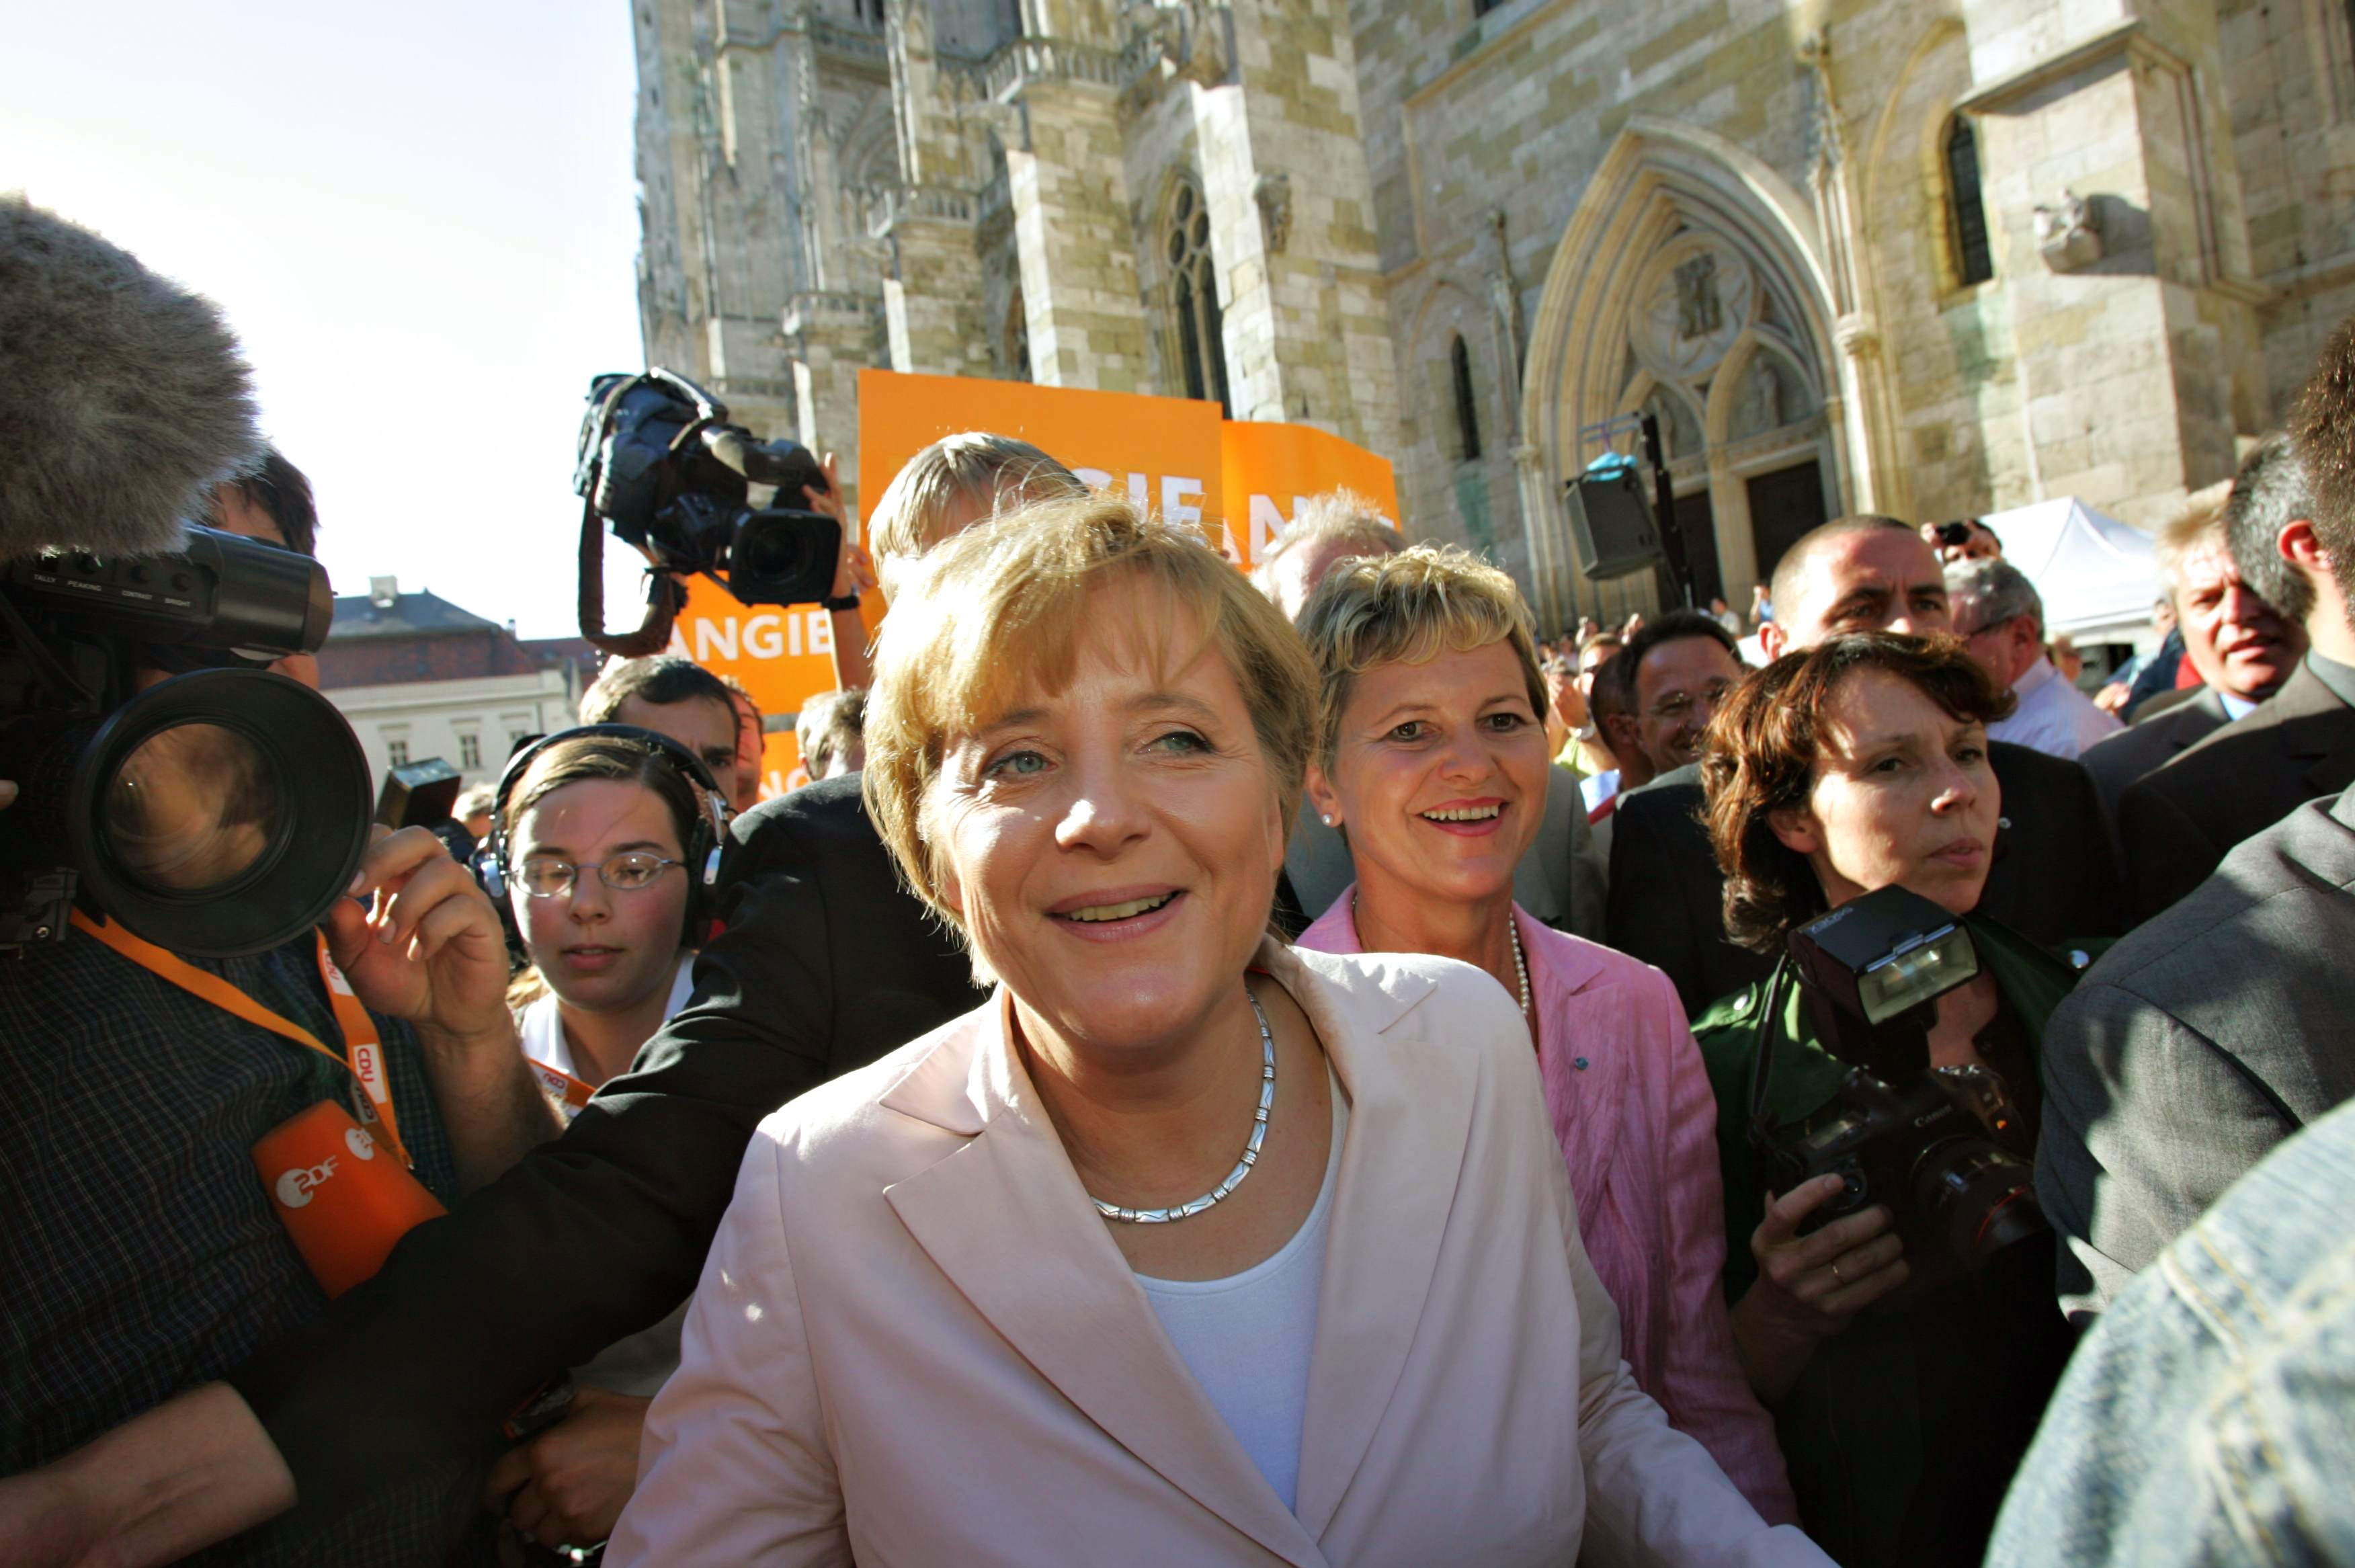 Angela Merkel campaigns in Regensburg, Germany, in 2005.